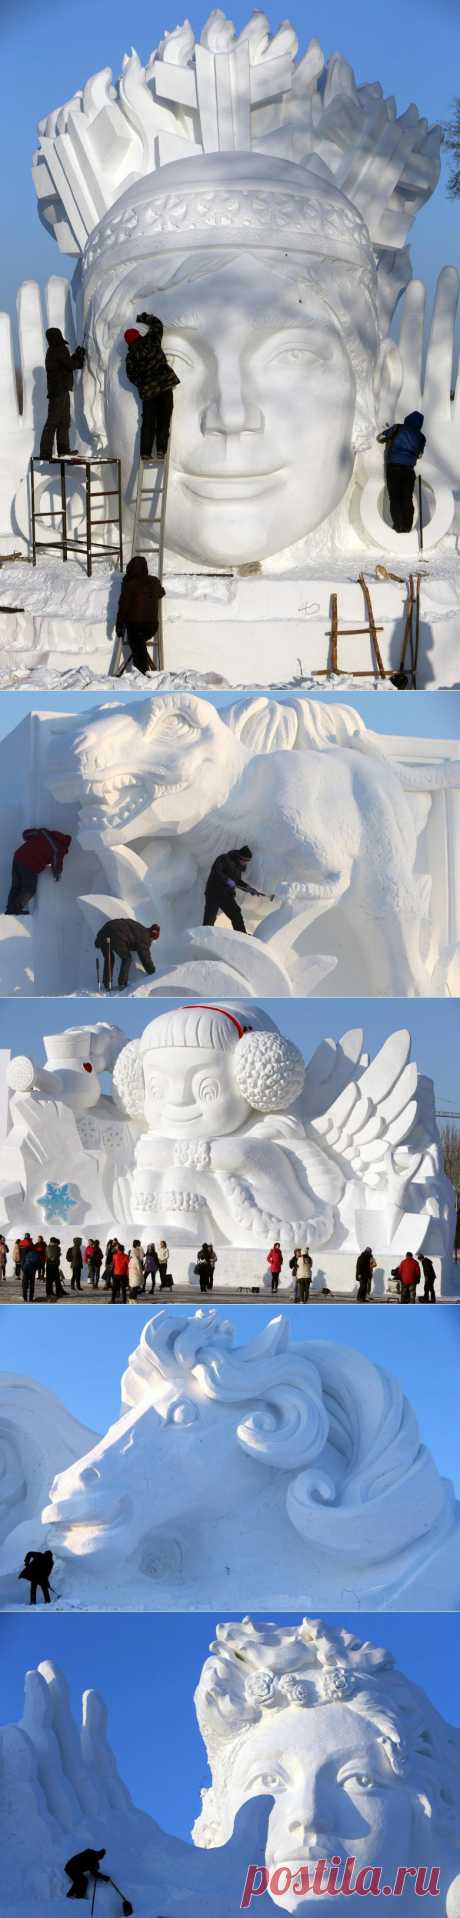 Скоро: фестиваль снежных скульптур / Туристический спутник